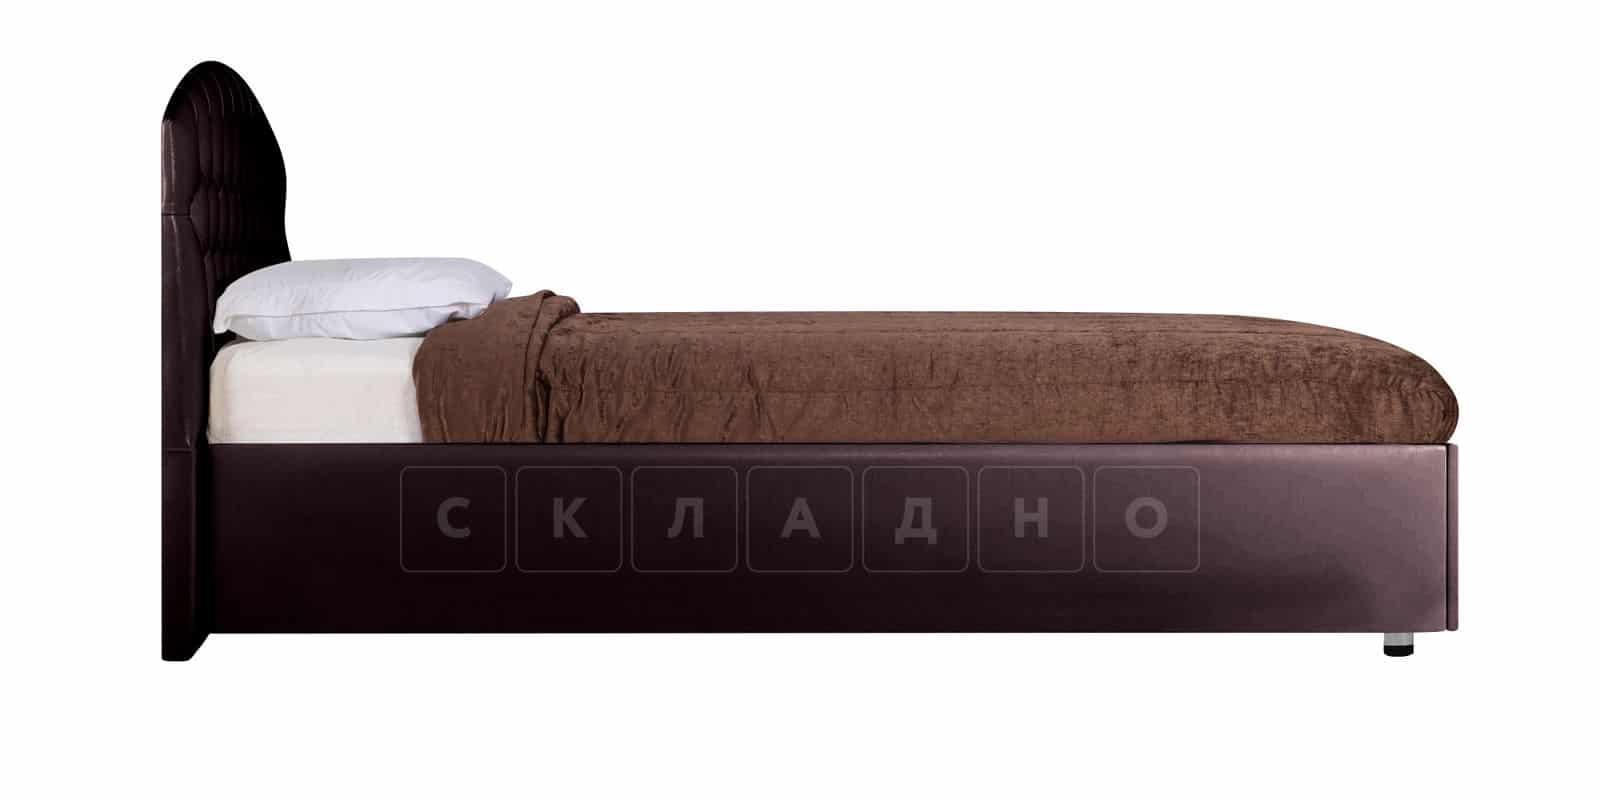 Мягкая кровать Малибу 160 см экокожа шоколадного цвета вариант 1 фото 5 | интернет-магазин Складно